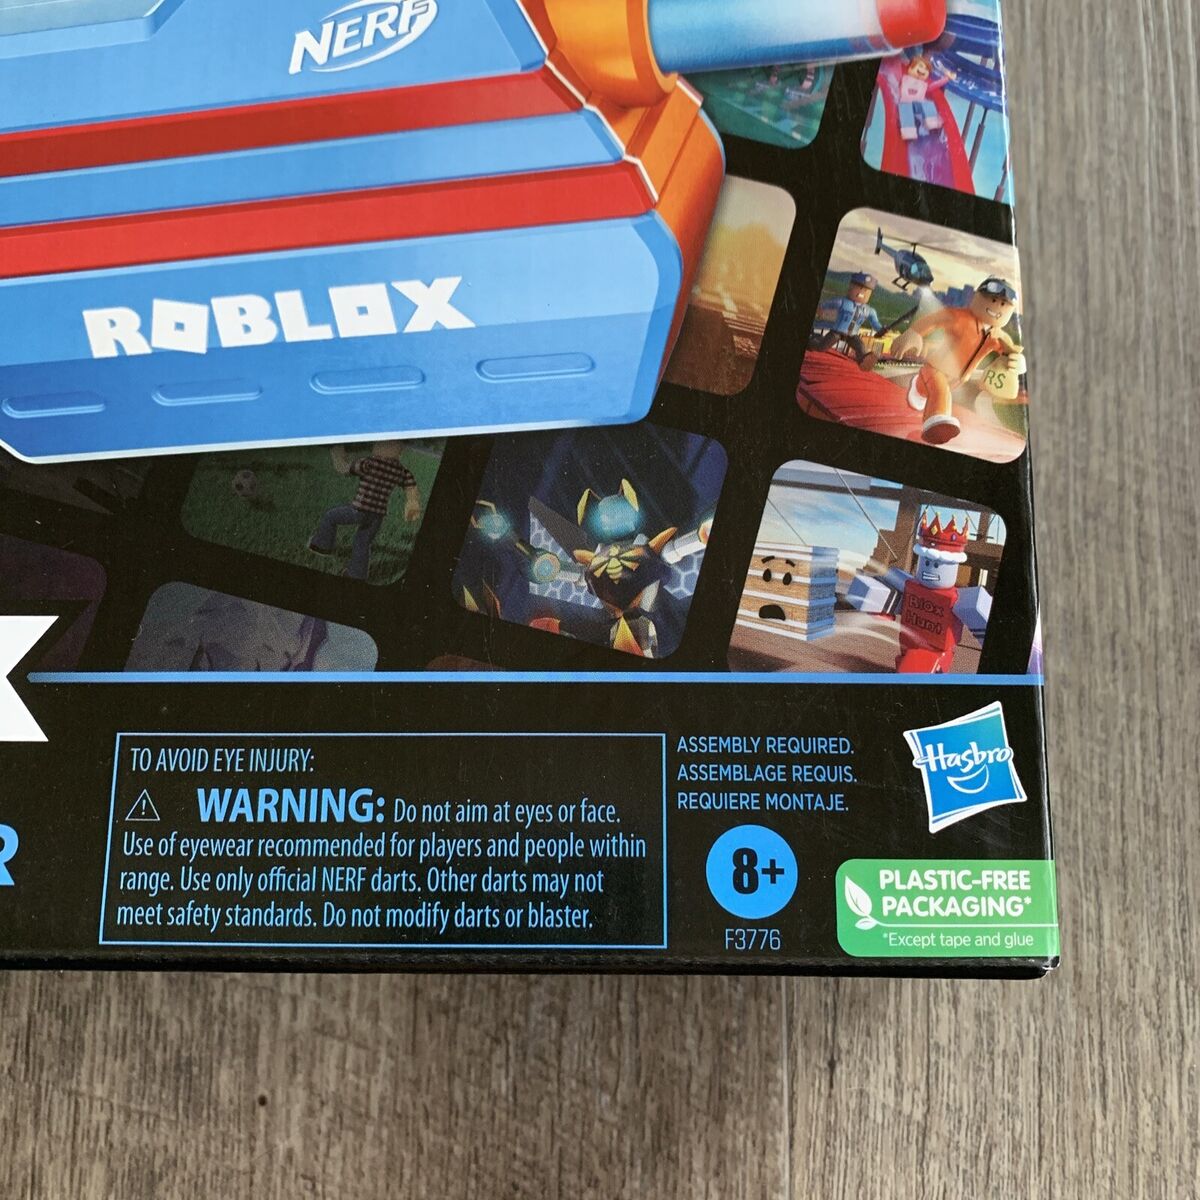 Nerf Roblox MM2: Dartbringer Dart Blaster - R Exclusive